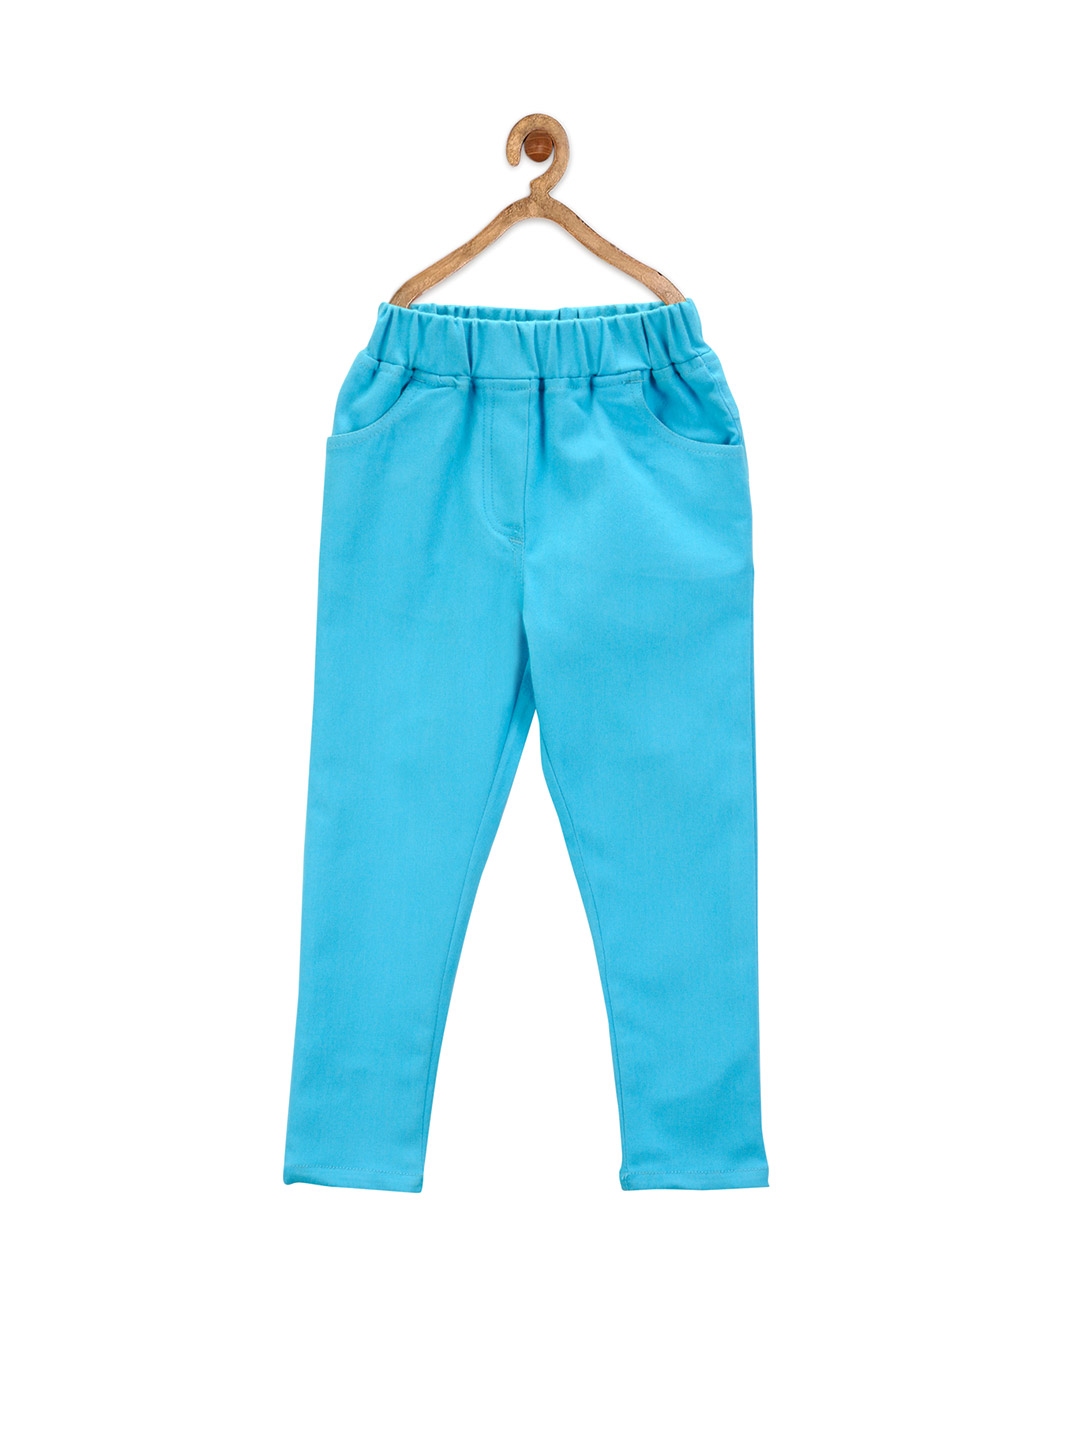 Buy StyleStone Girls Turquoise Blue Stretchable Denim Jeggings ...